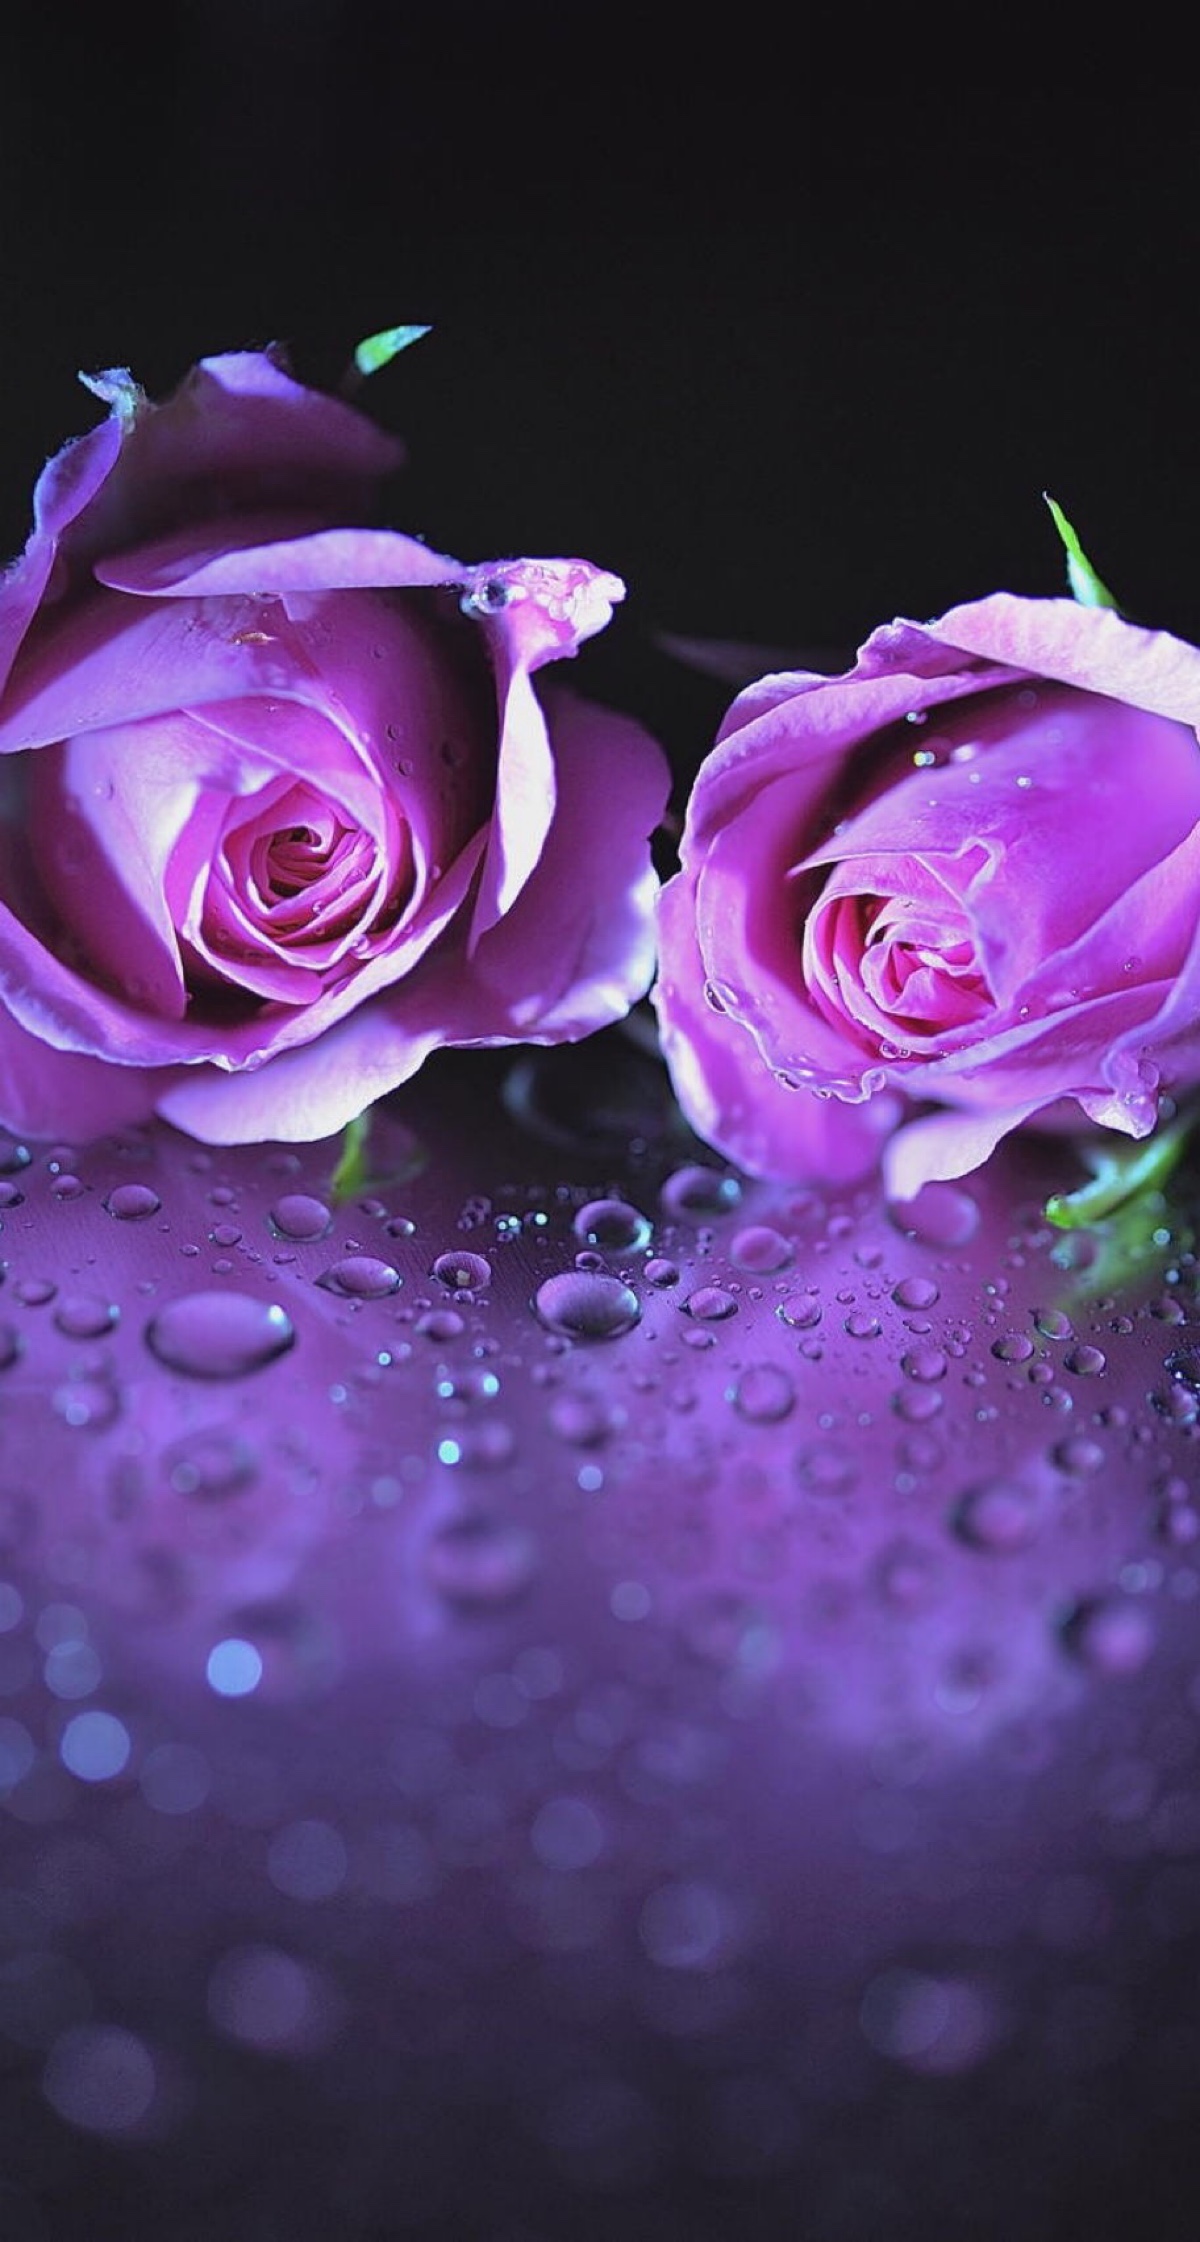 淡紫玫瑰作为礼物 库存照片. 图片 包括有 玫瑰, 紫色, 庭院, 牡丹, 红色, 上升了, 开花, 工厂 - 229181960